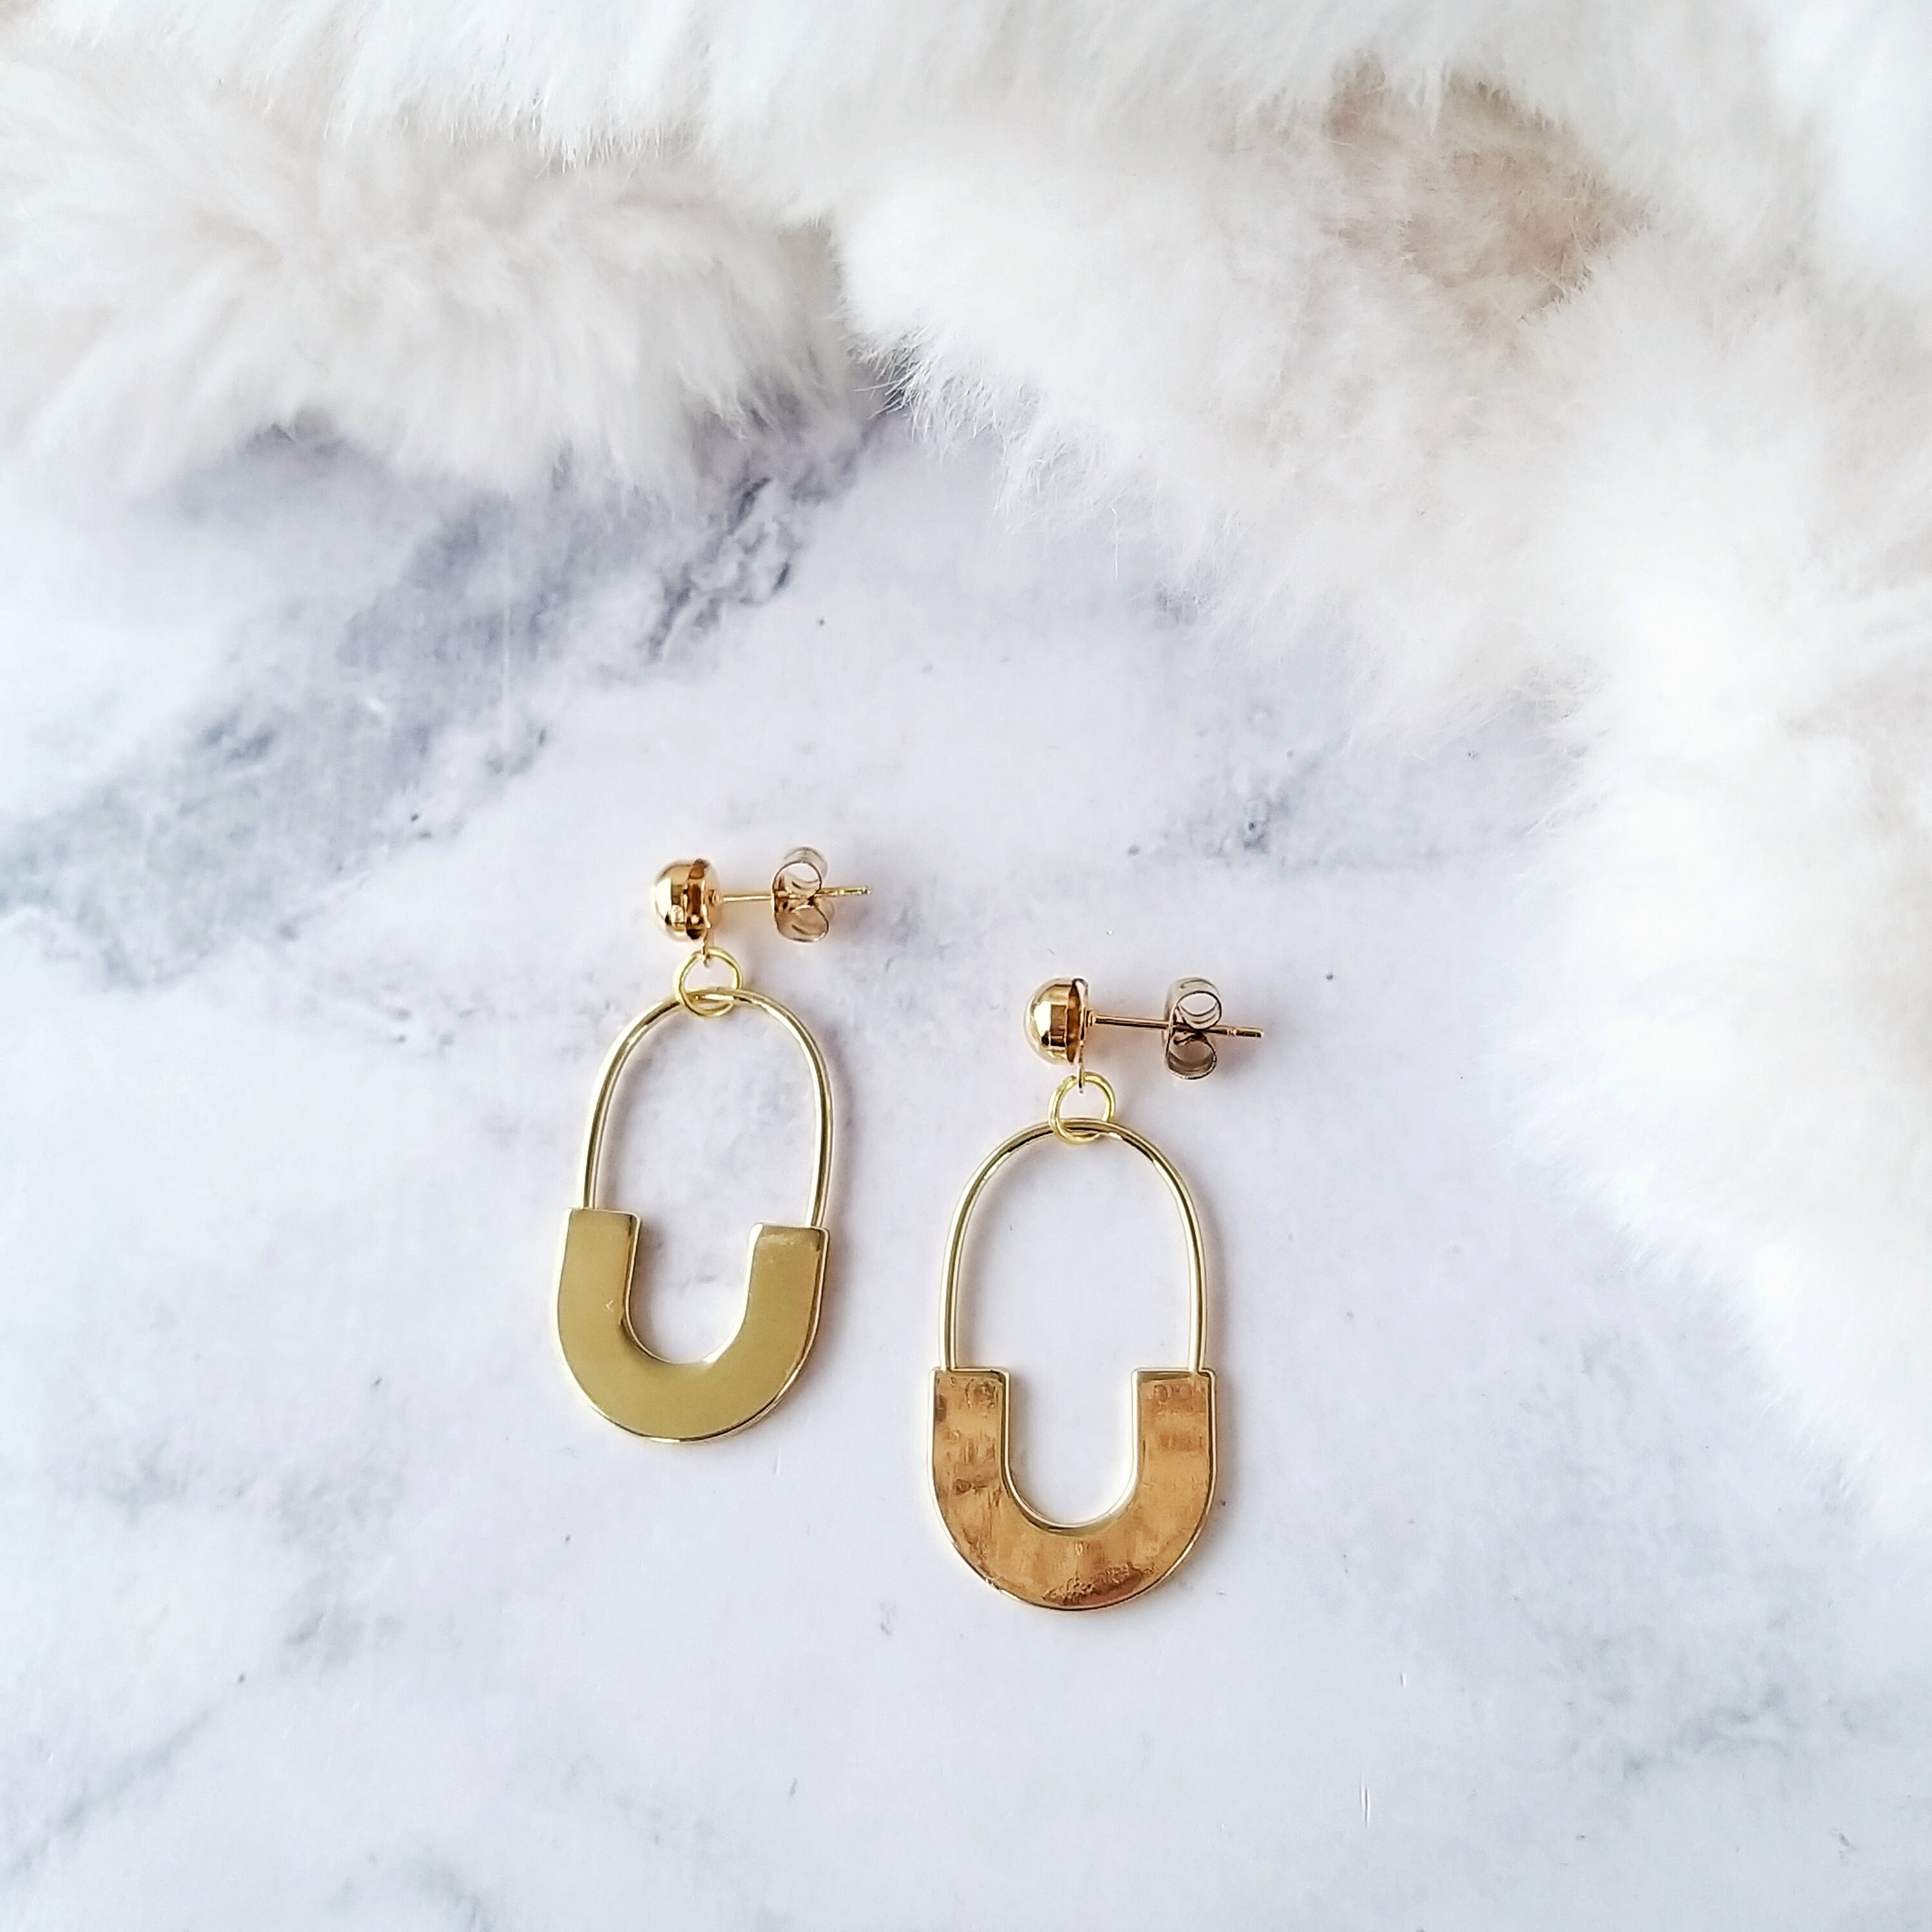 Golden Lock Charm Earrings Shinny Gold Clip Dangle Earrings | Etsy